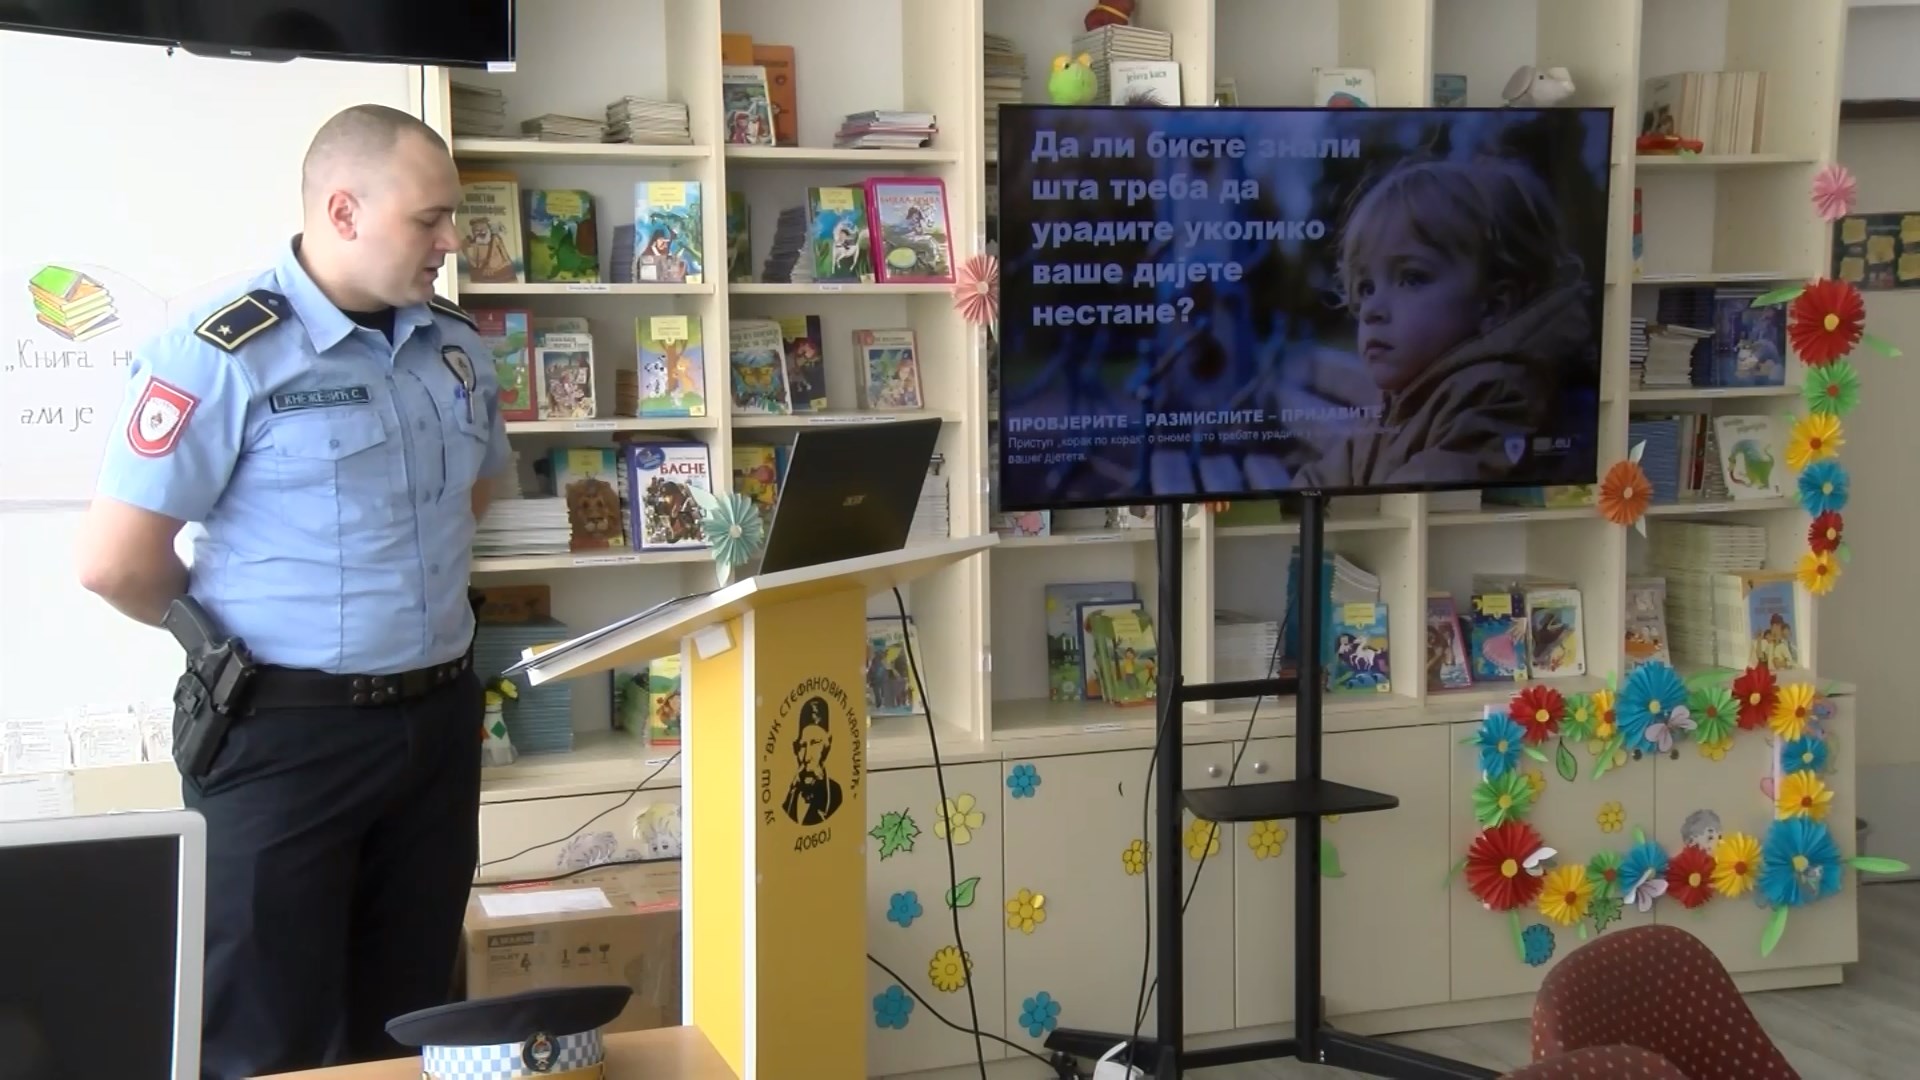 Kampanja o nestanku djece “Provjerite-razmislite-prijavite” u Doboju (VIDEO)